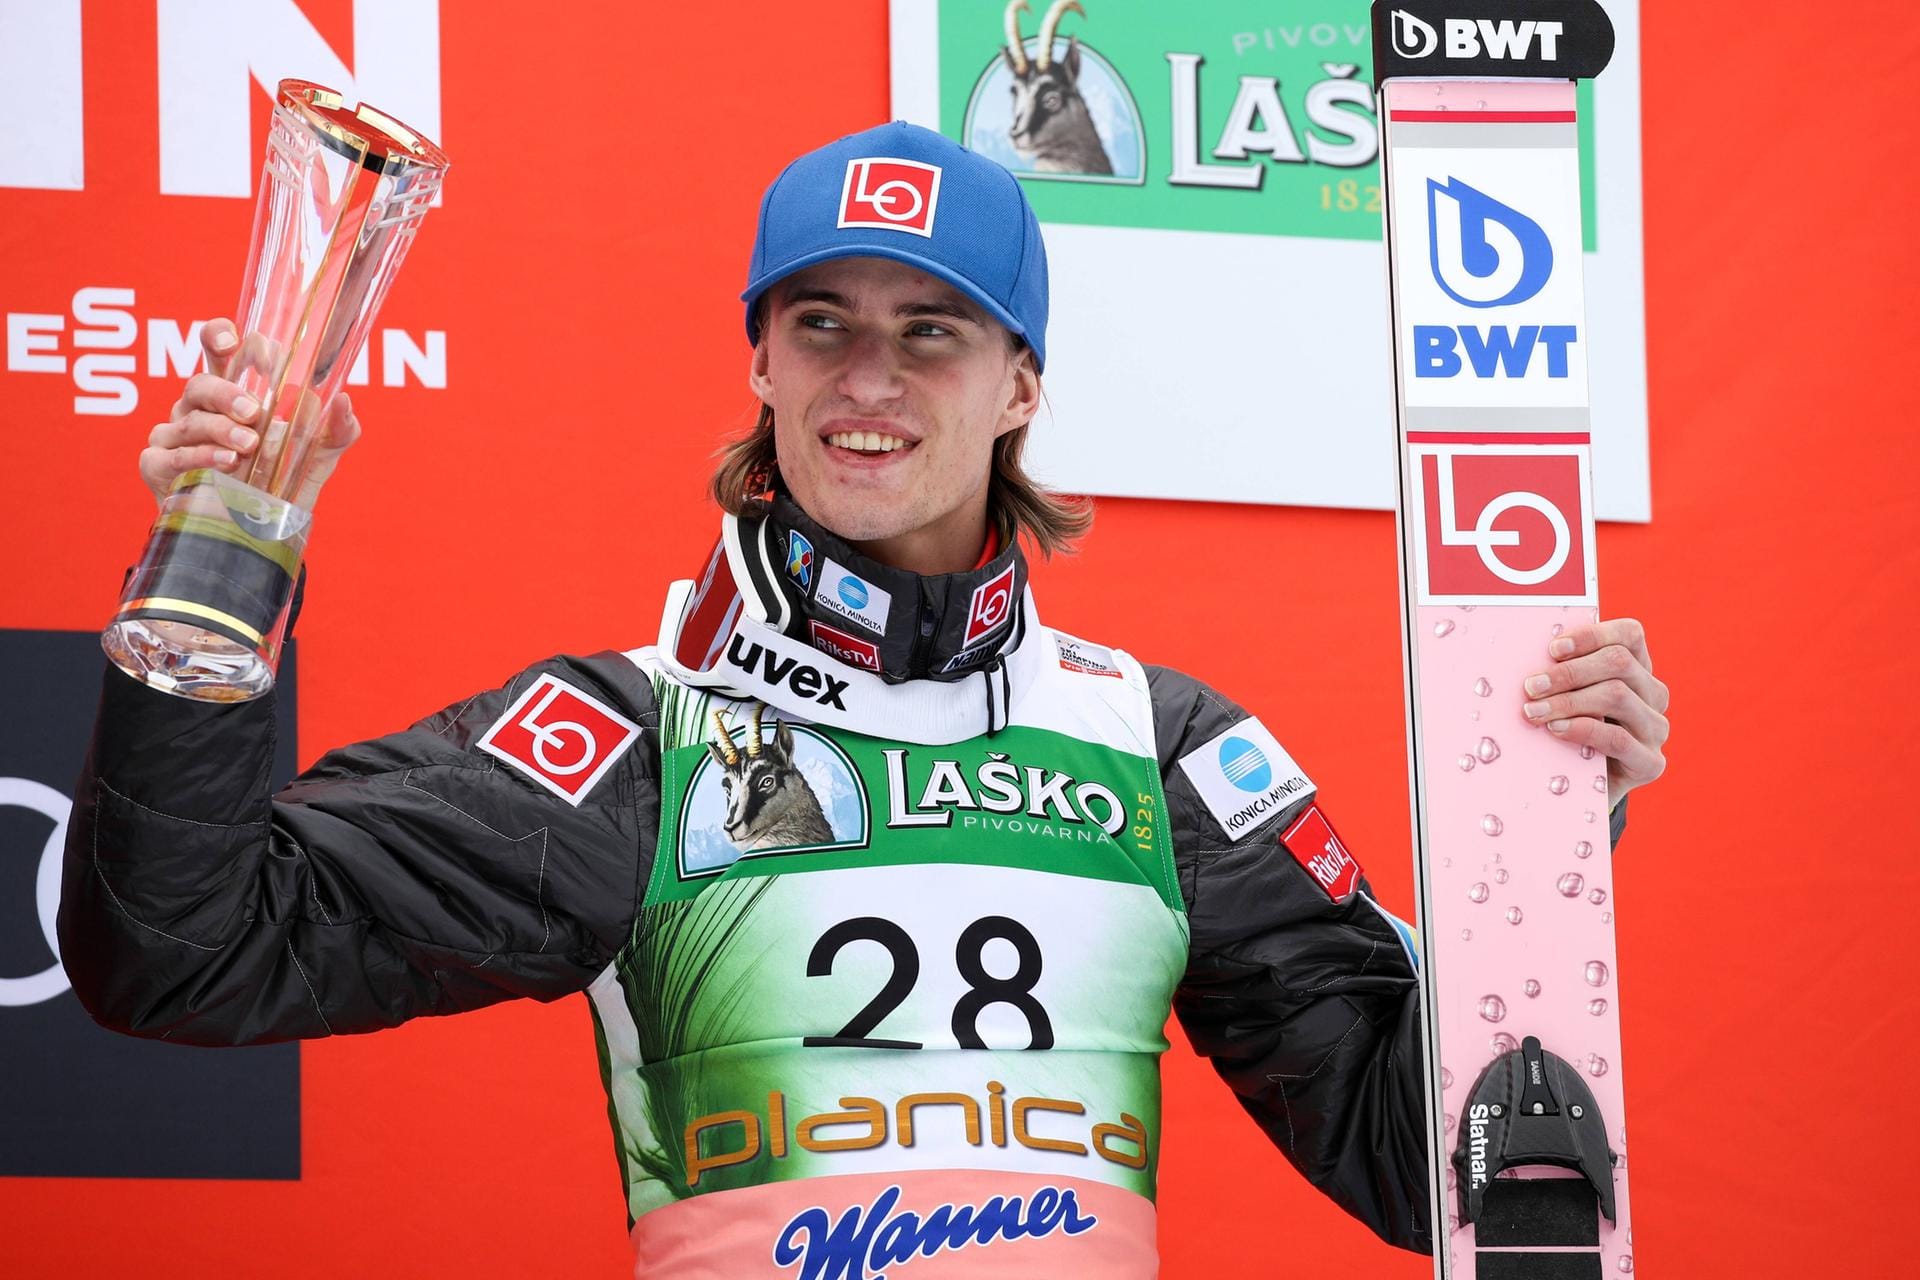 Der Norweger Daniel-André Tande beendete die Vorsaison auf dem dritten Platz in der Gesamtwertung. Zudem wurde er Team-Olympiasieger, Team-Weltmeister im Skifliegen und holte sich bei der Skiflug-WM auch den Einzeltitel.